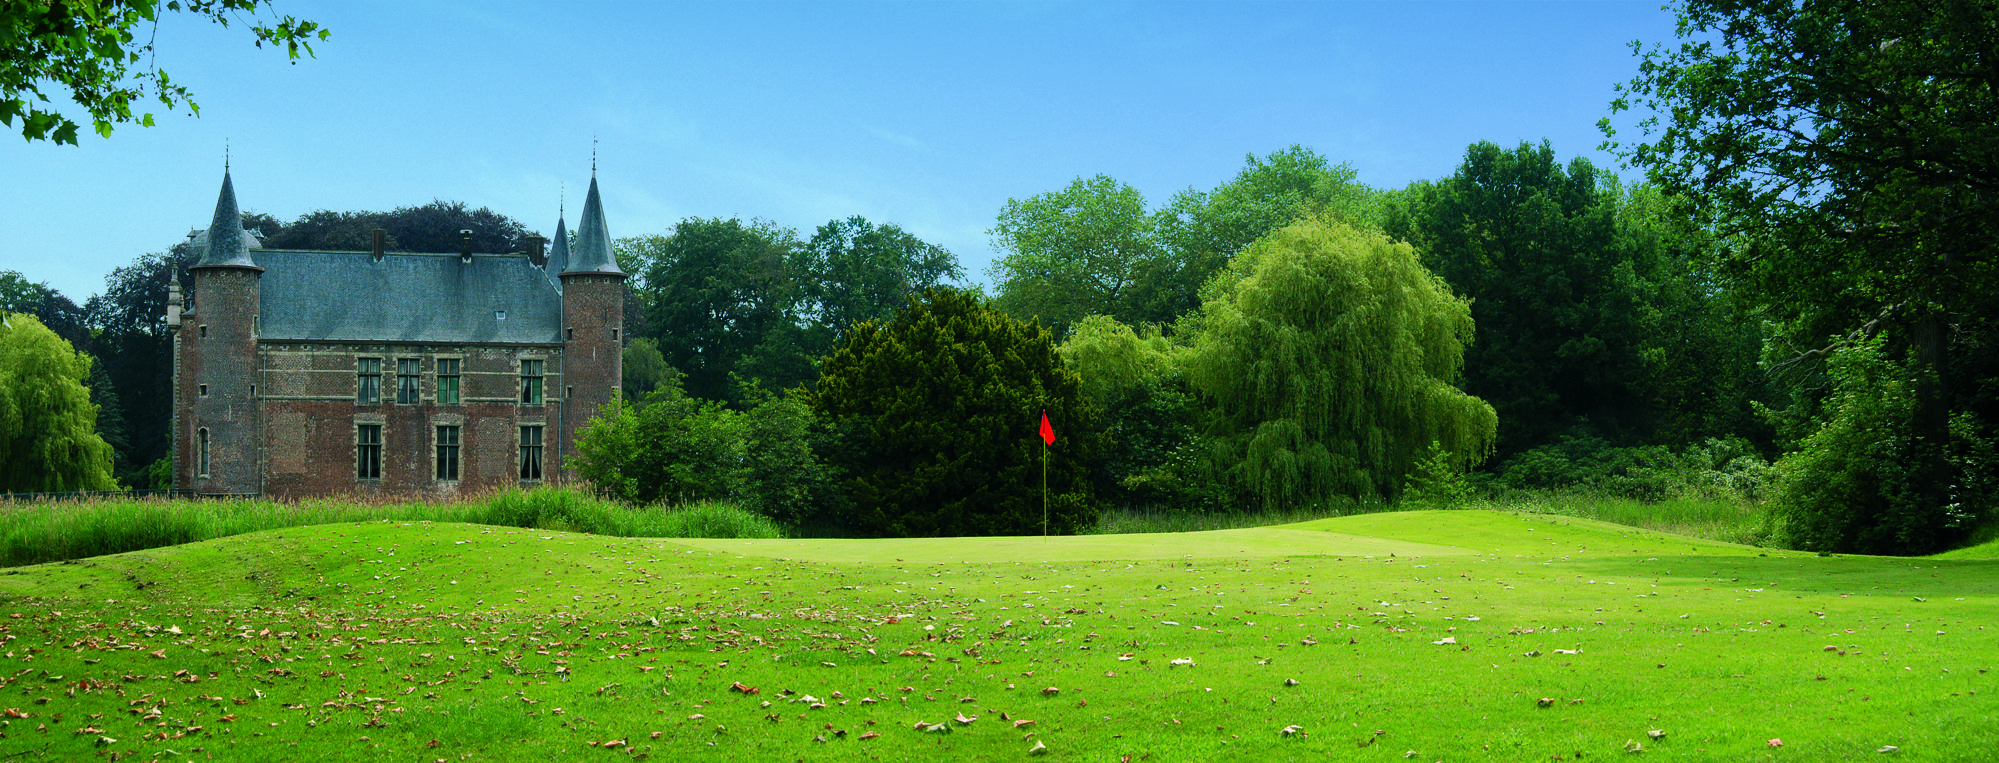 Cleydael Golf & Country Club